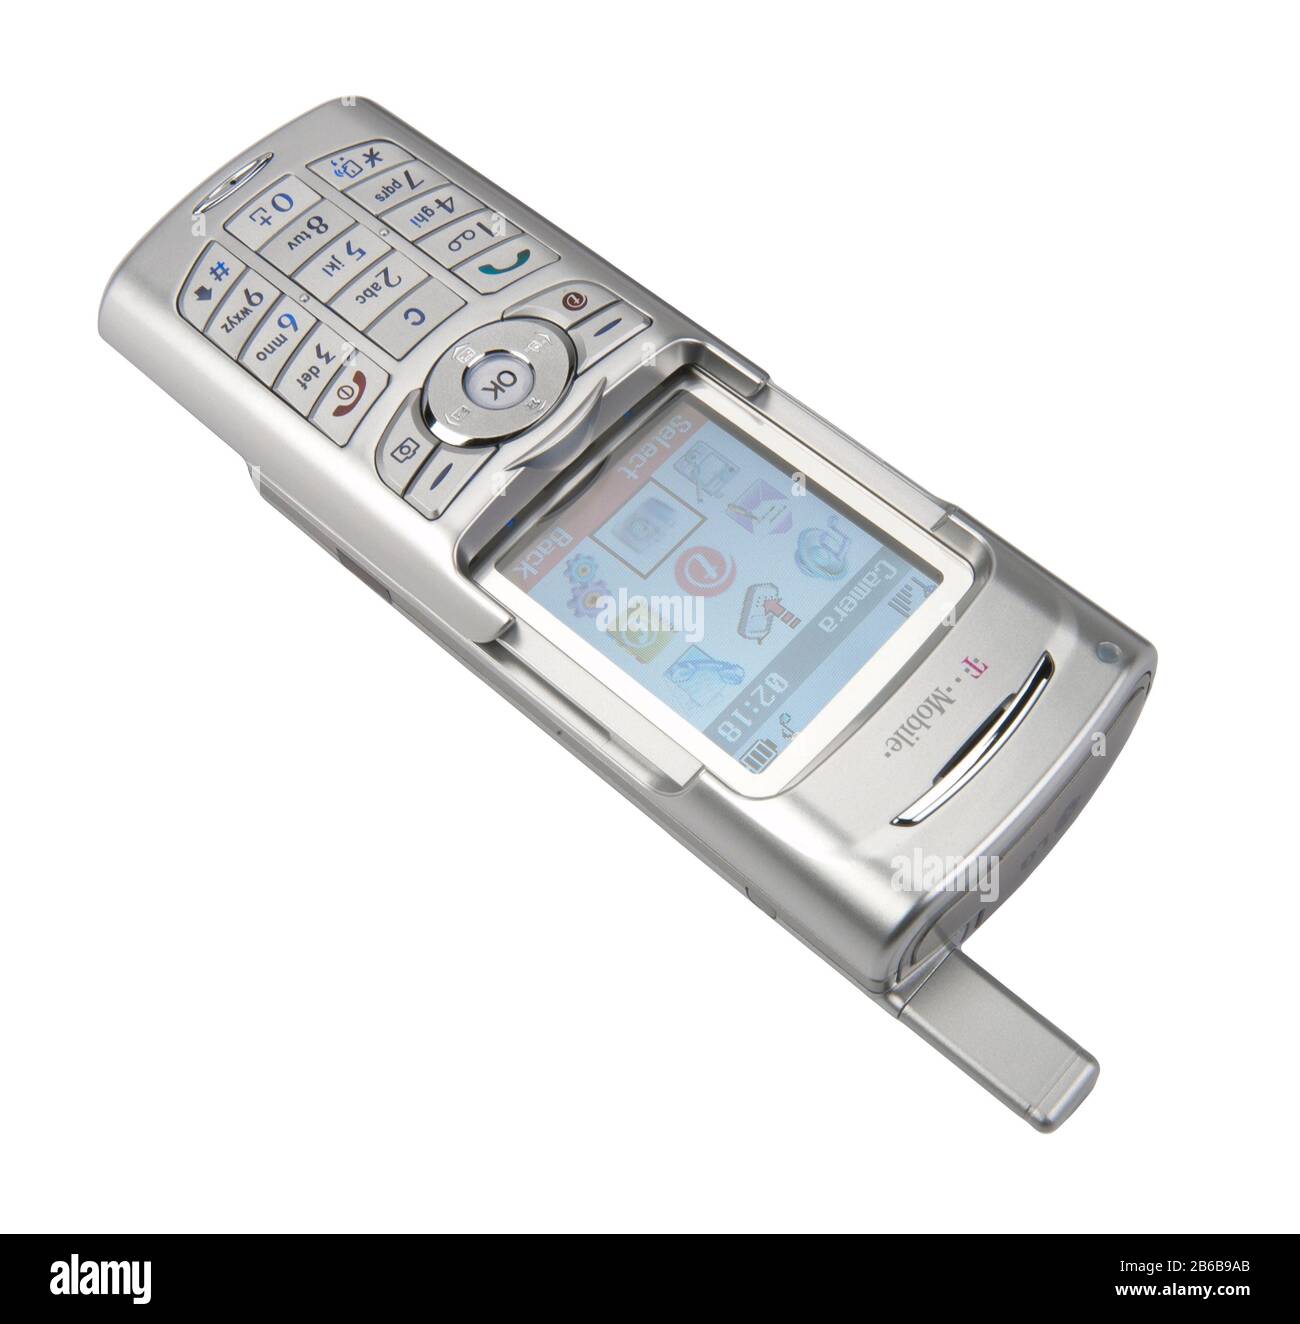 Mobiltelefon im alten Stil der 1990er Jahre. LG Mobiltelefon mit Farbdisplay auf T Mobile. Stockfoto